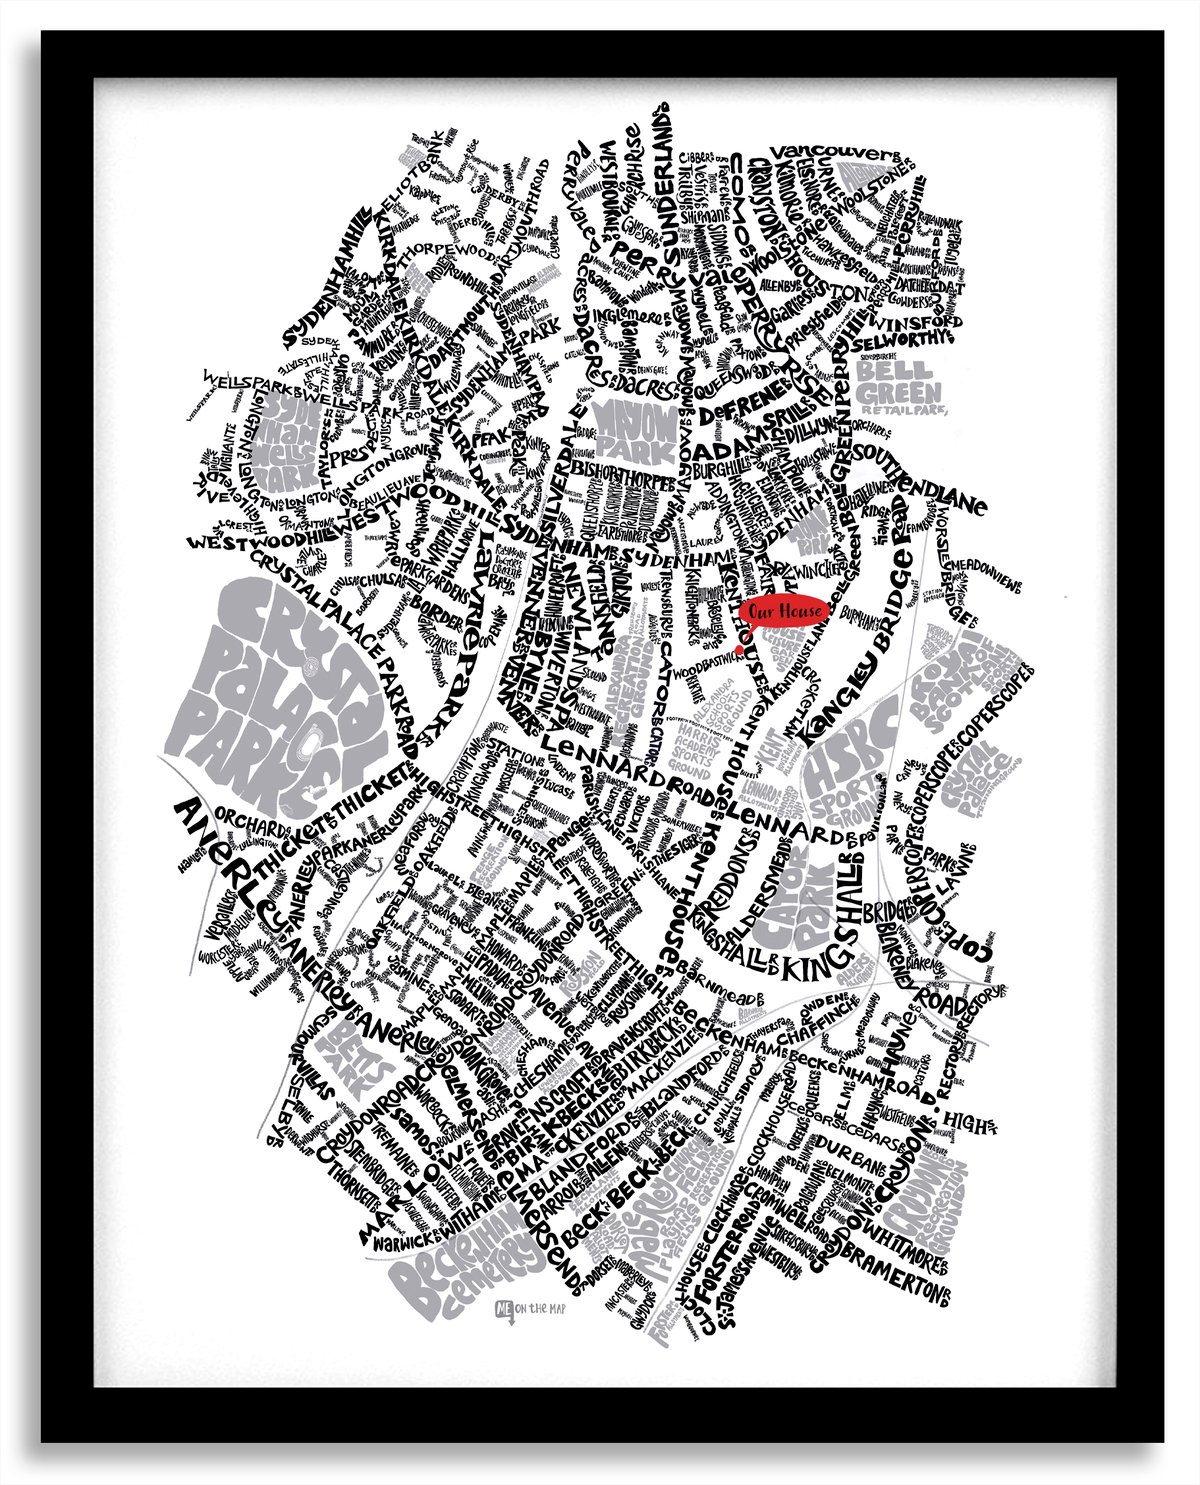 Image of Sydenham SE26, Penge & Anerley SE20  - SE London Type Map